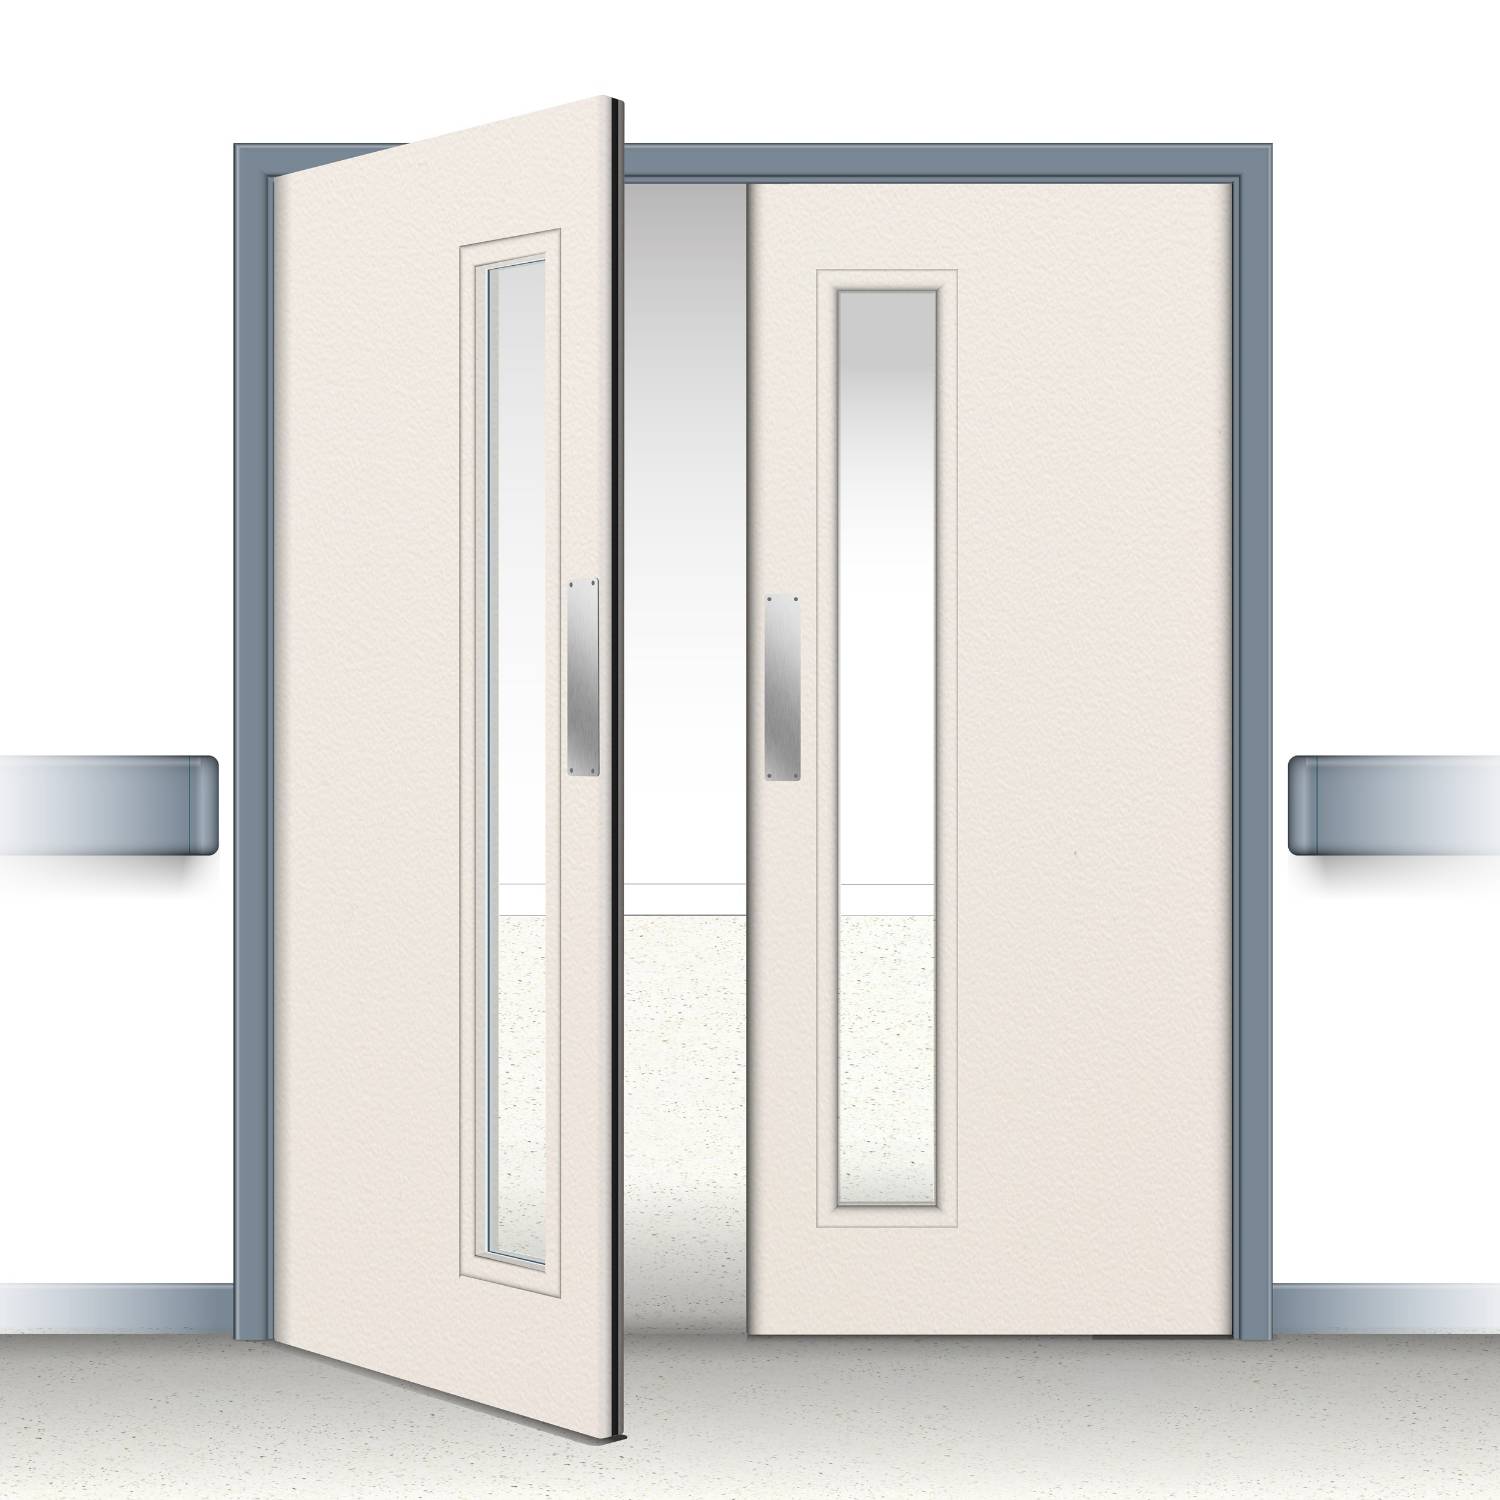 Postformed Double Swing Doorset - Vision Panel 5